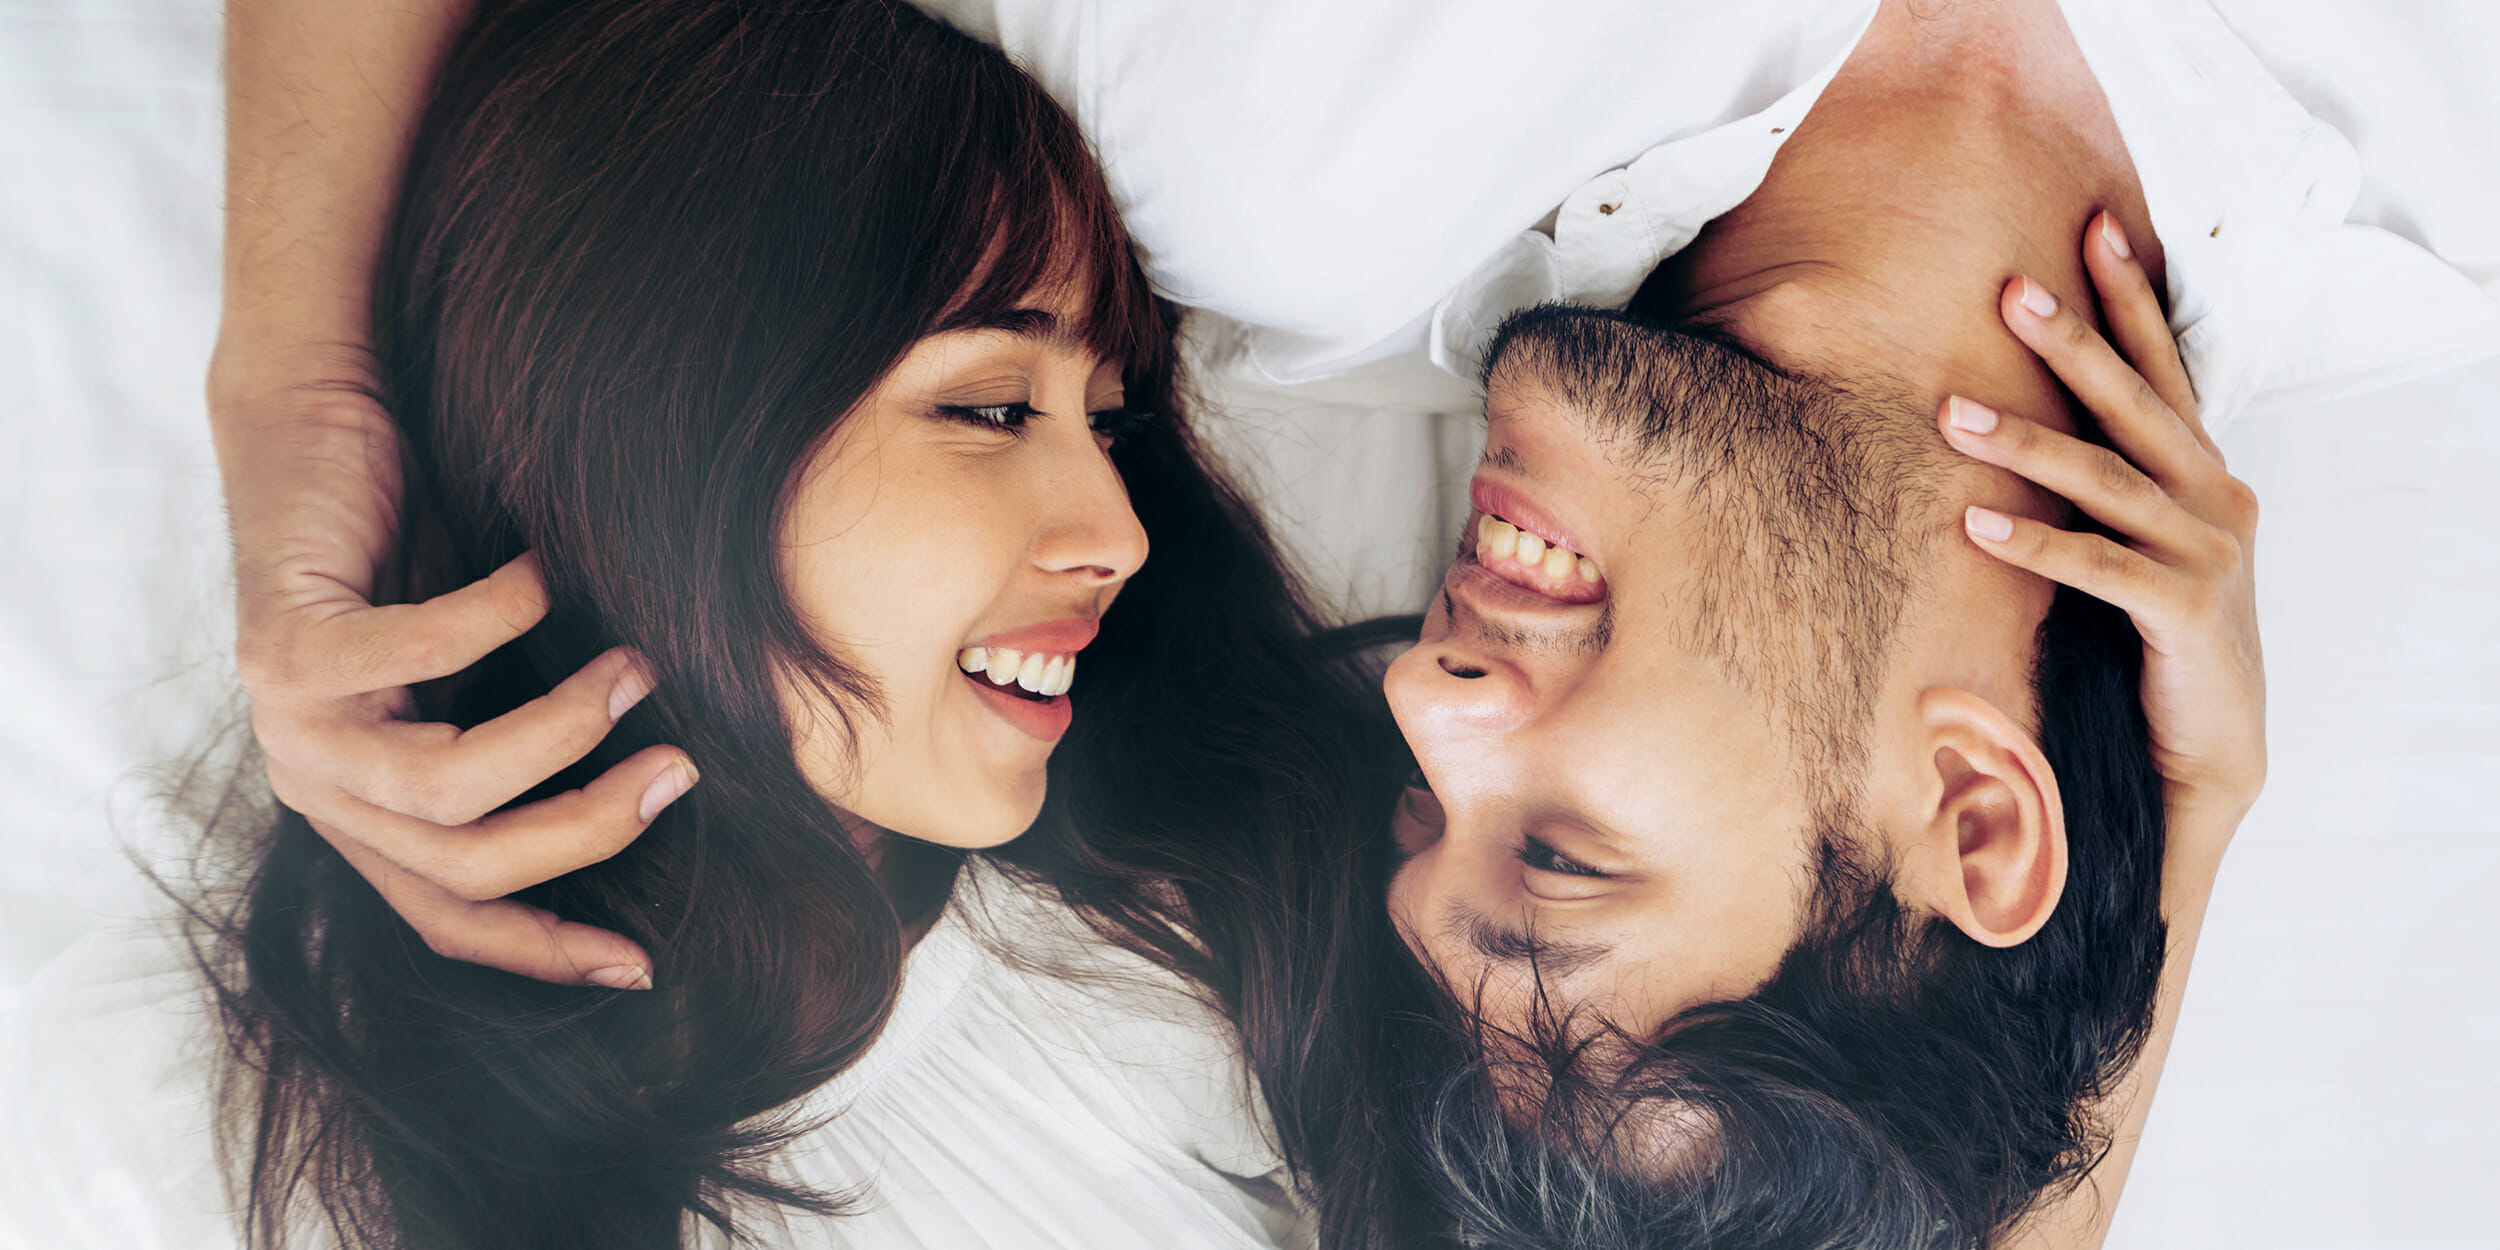 11 რამ, რასაც გაიგებთ კარგი ურთიერთობების შესახებ, როდესაც ნამდვილ სიყვარულს შეხვდებით